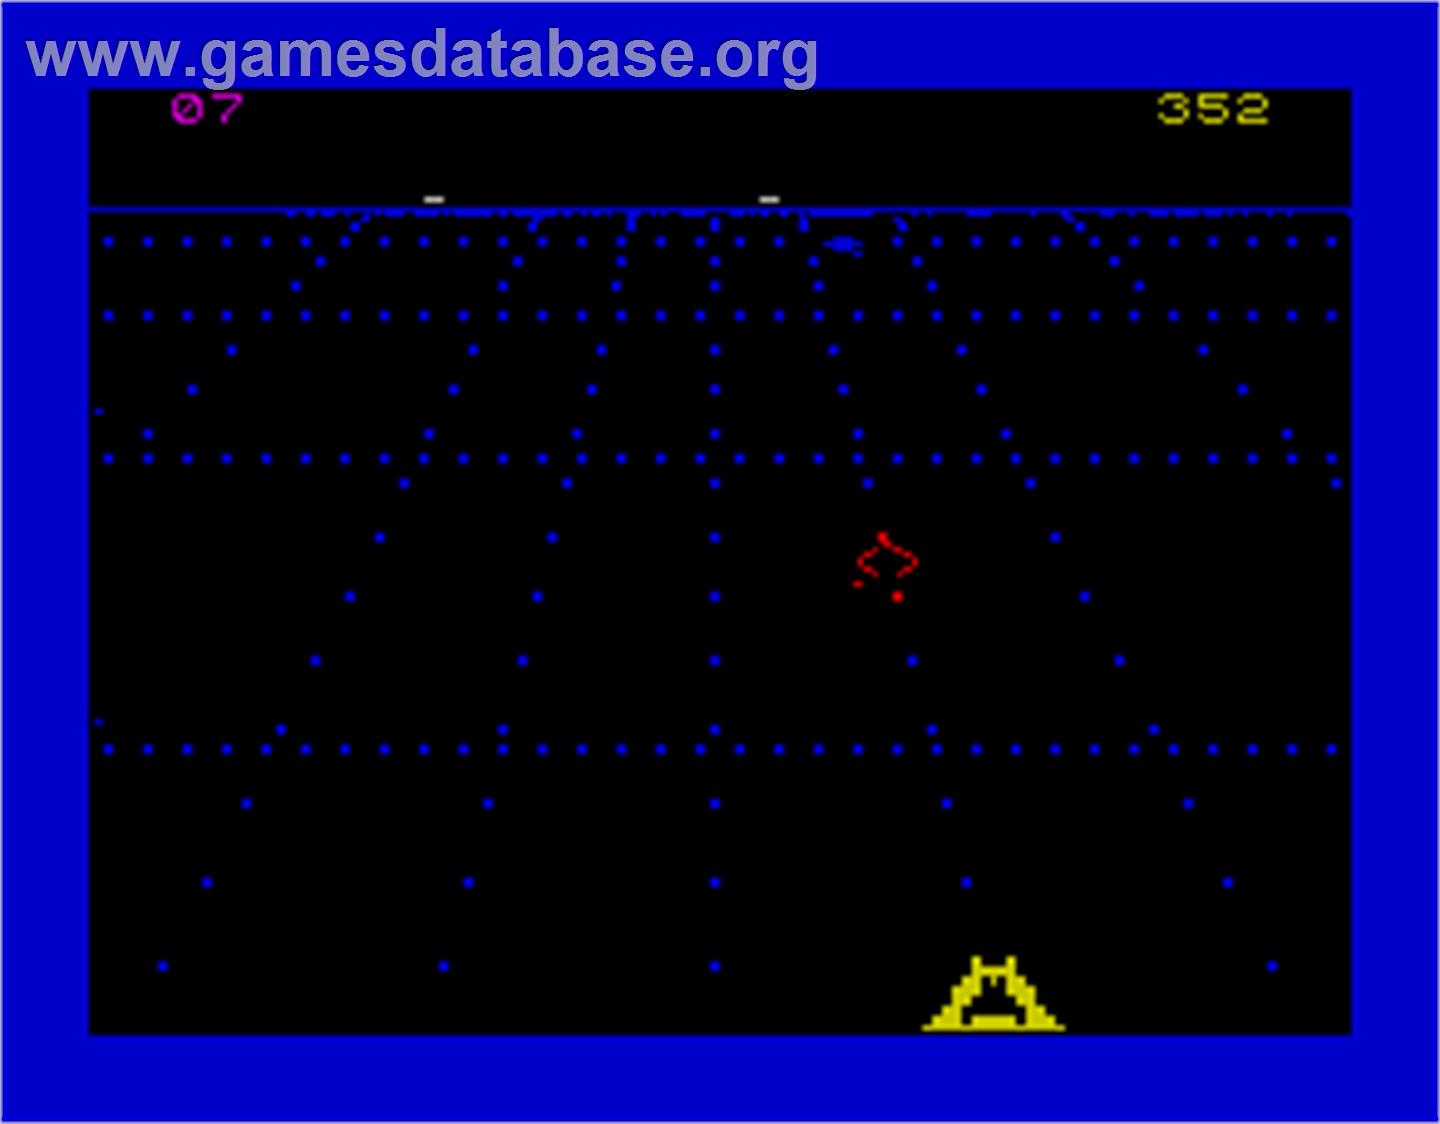 Beamrider - Sinclair ZX Spectrum - Artwork - In Game